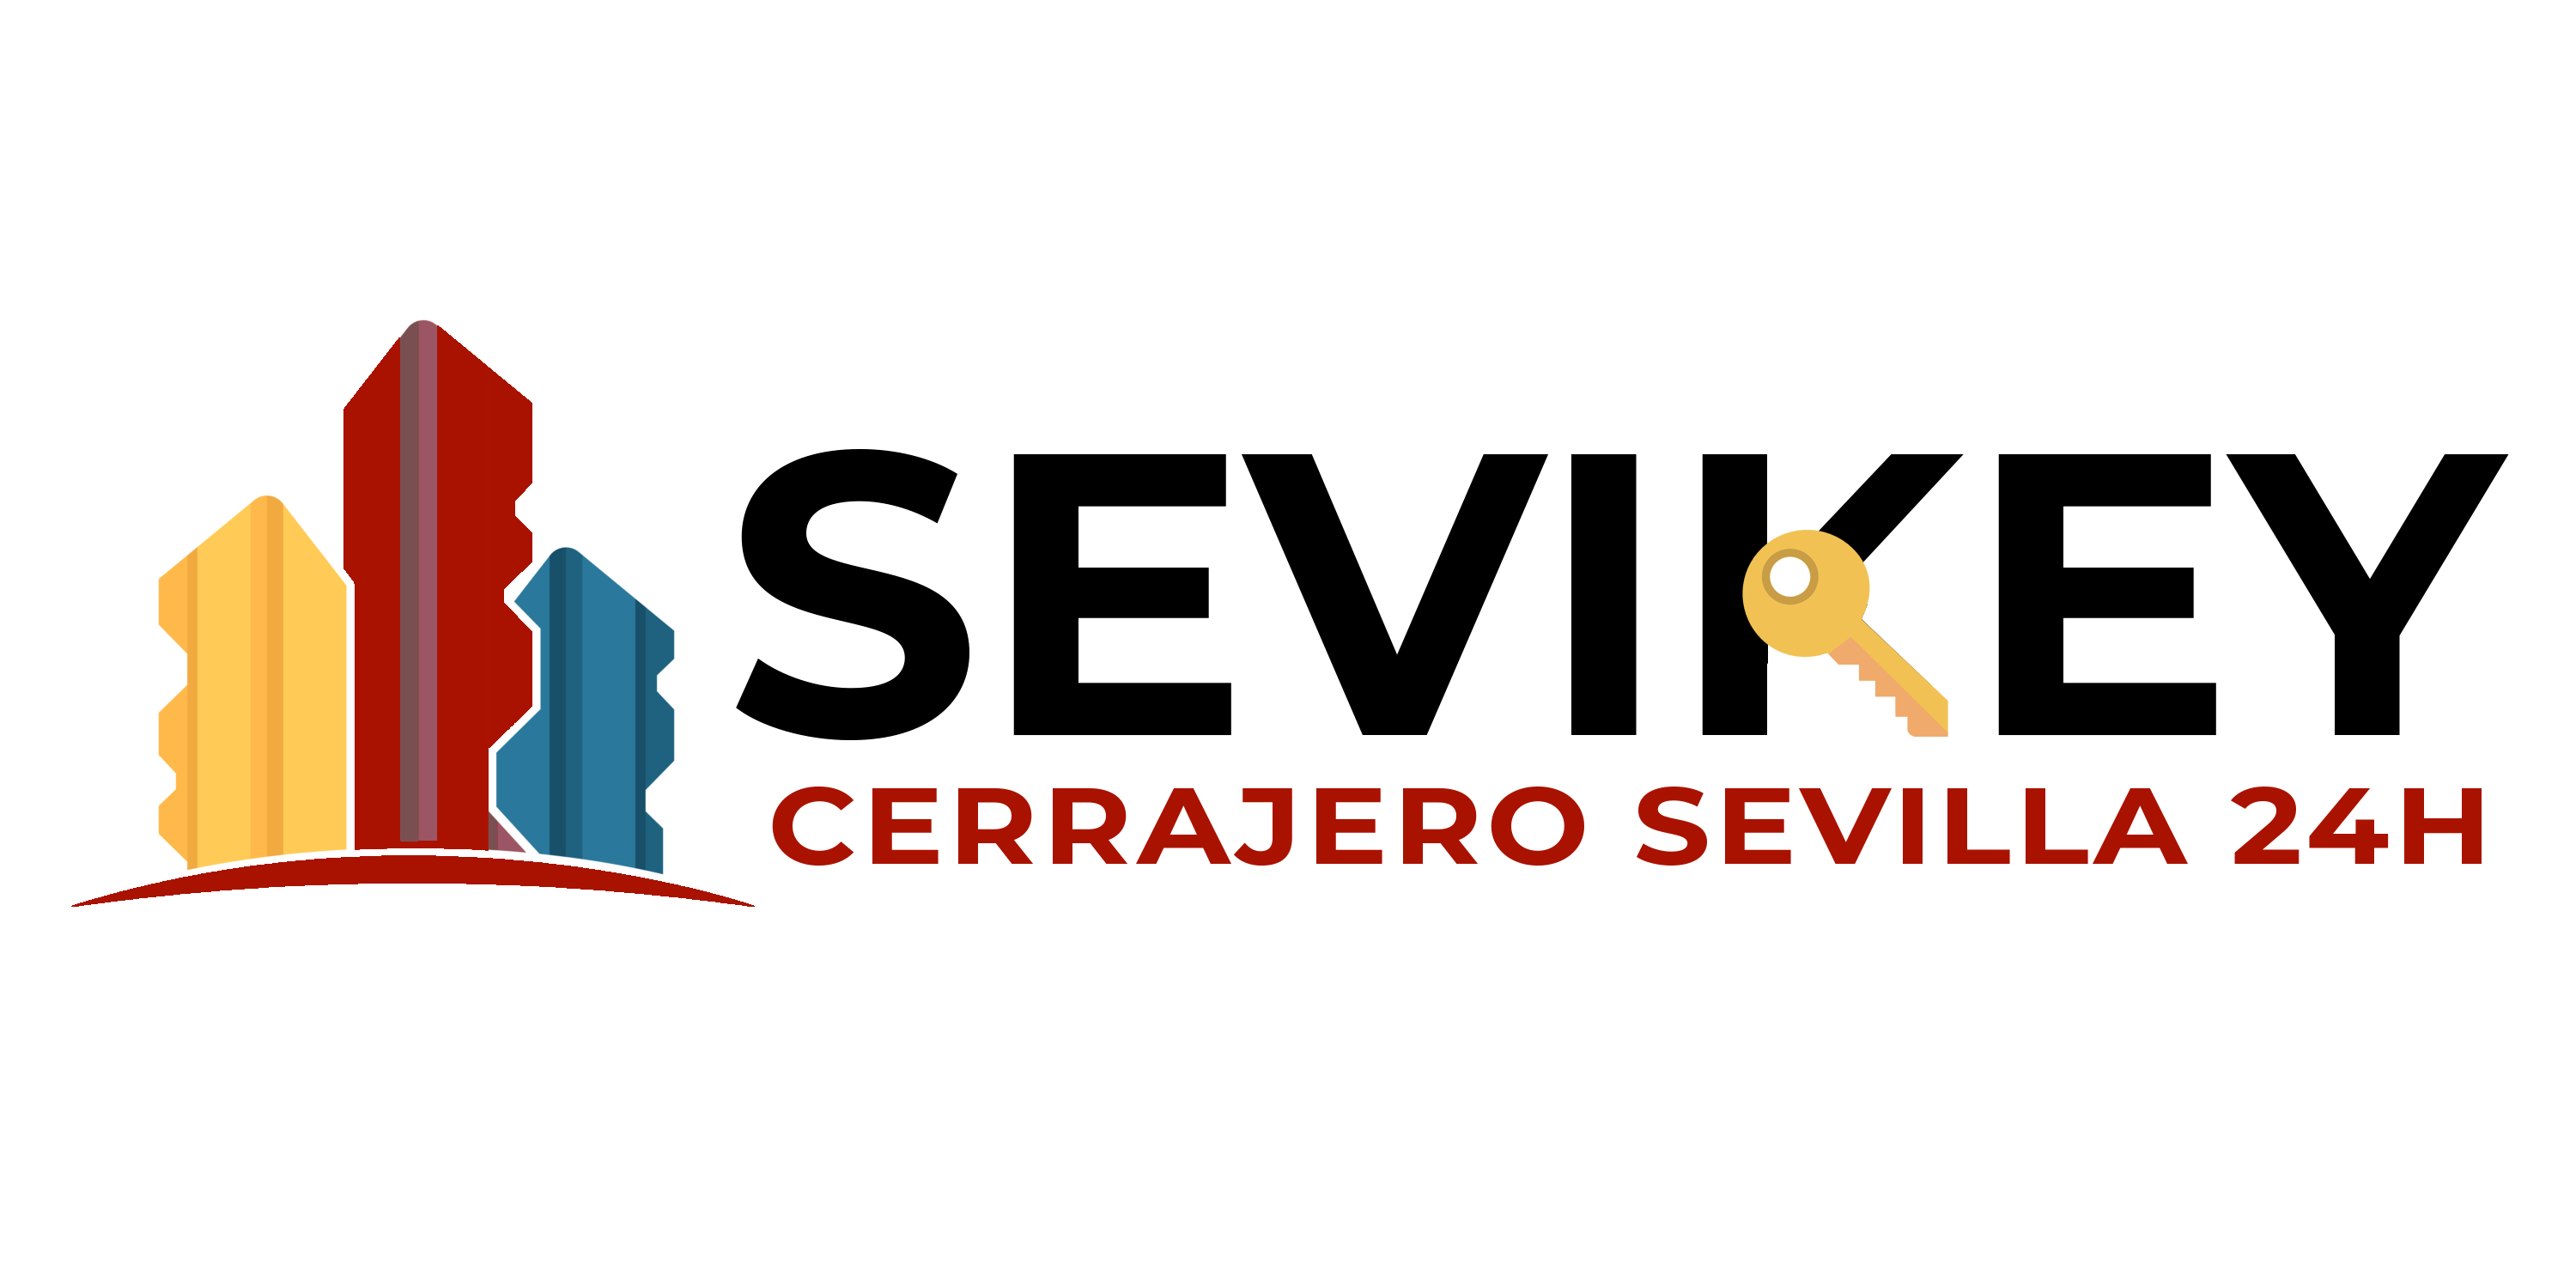 Cerrajero Sevilla Sevikey